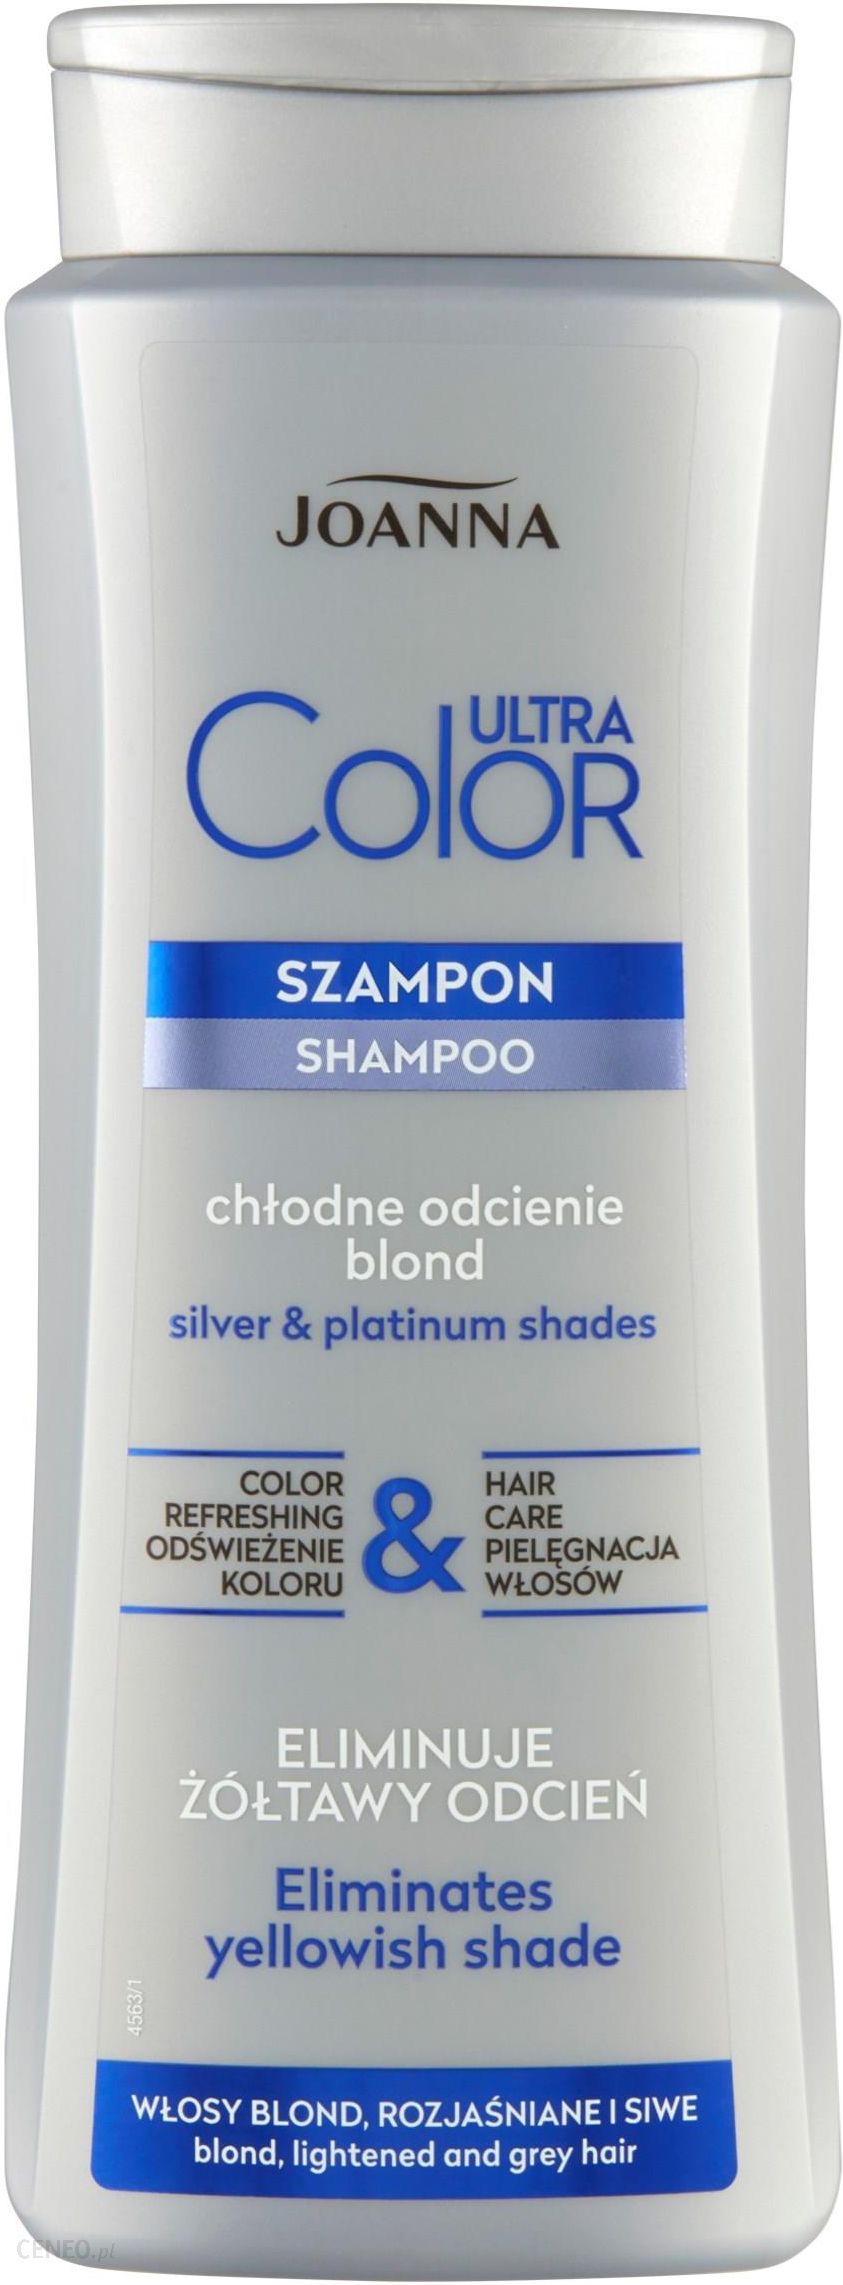 szampon chlodny blond